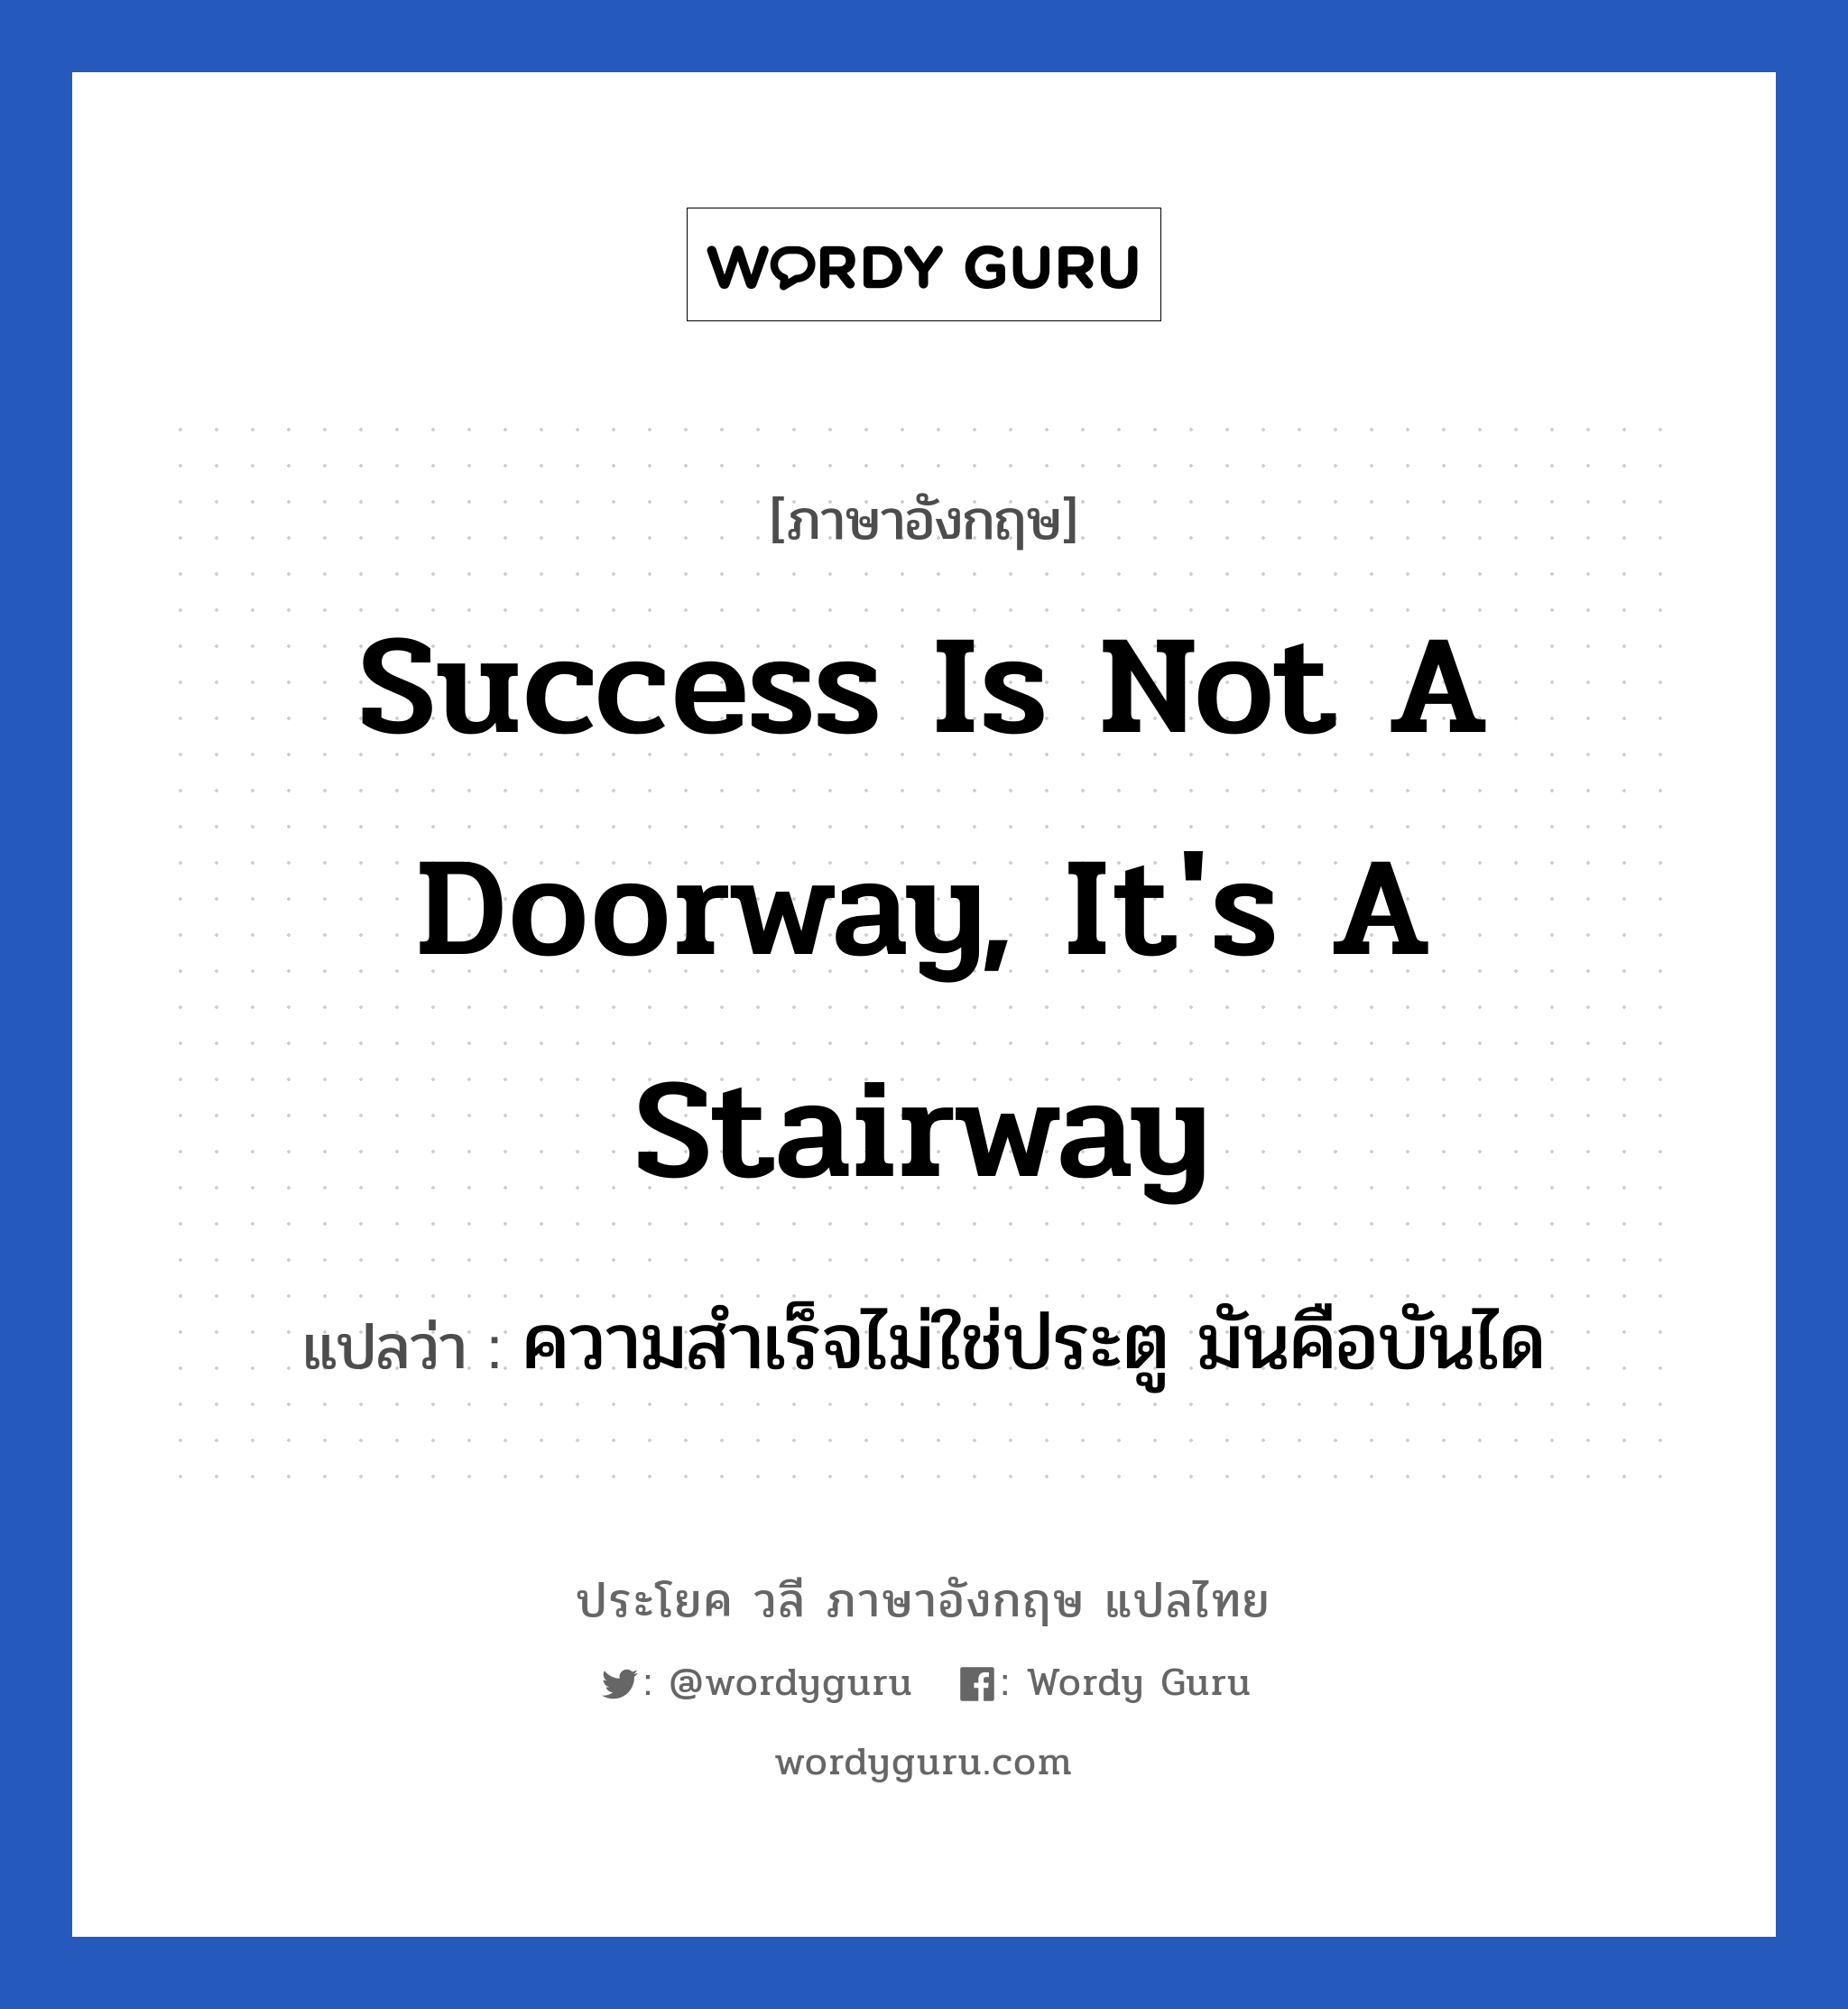 Success is not a doorway, it's a stairway แปลว่า? เป็นประโยคในกลุ่มประเภท ในที่ทำงาน, วลีภาษาอังกฤษ Success is not a doorway, it's a stairway แปลว่า ความสำเร็จไม่ใช่ประตู มันคือบันได หมวด ในที่ทำงาน